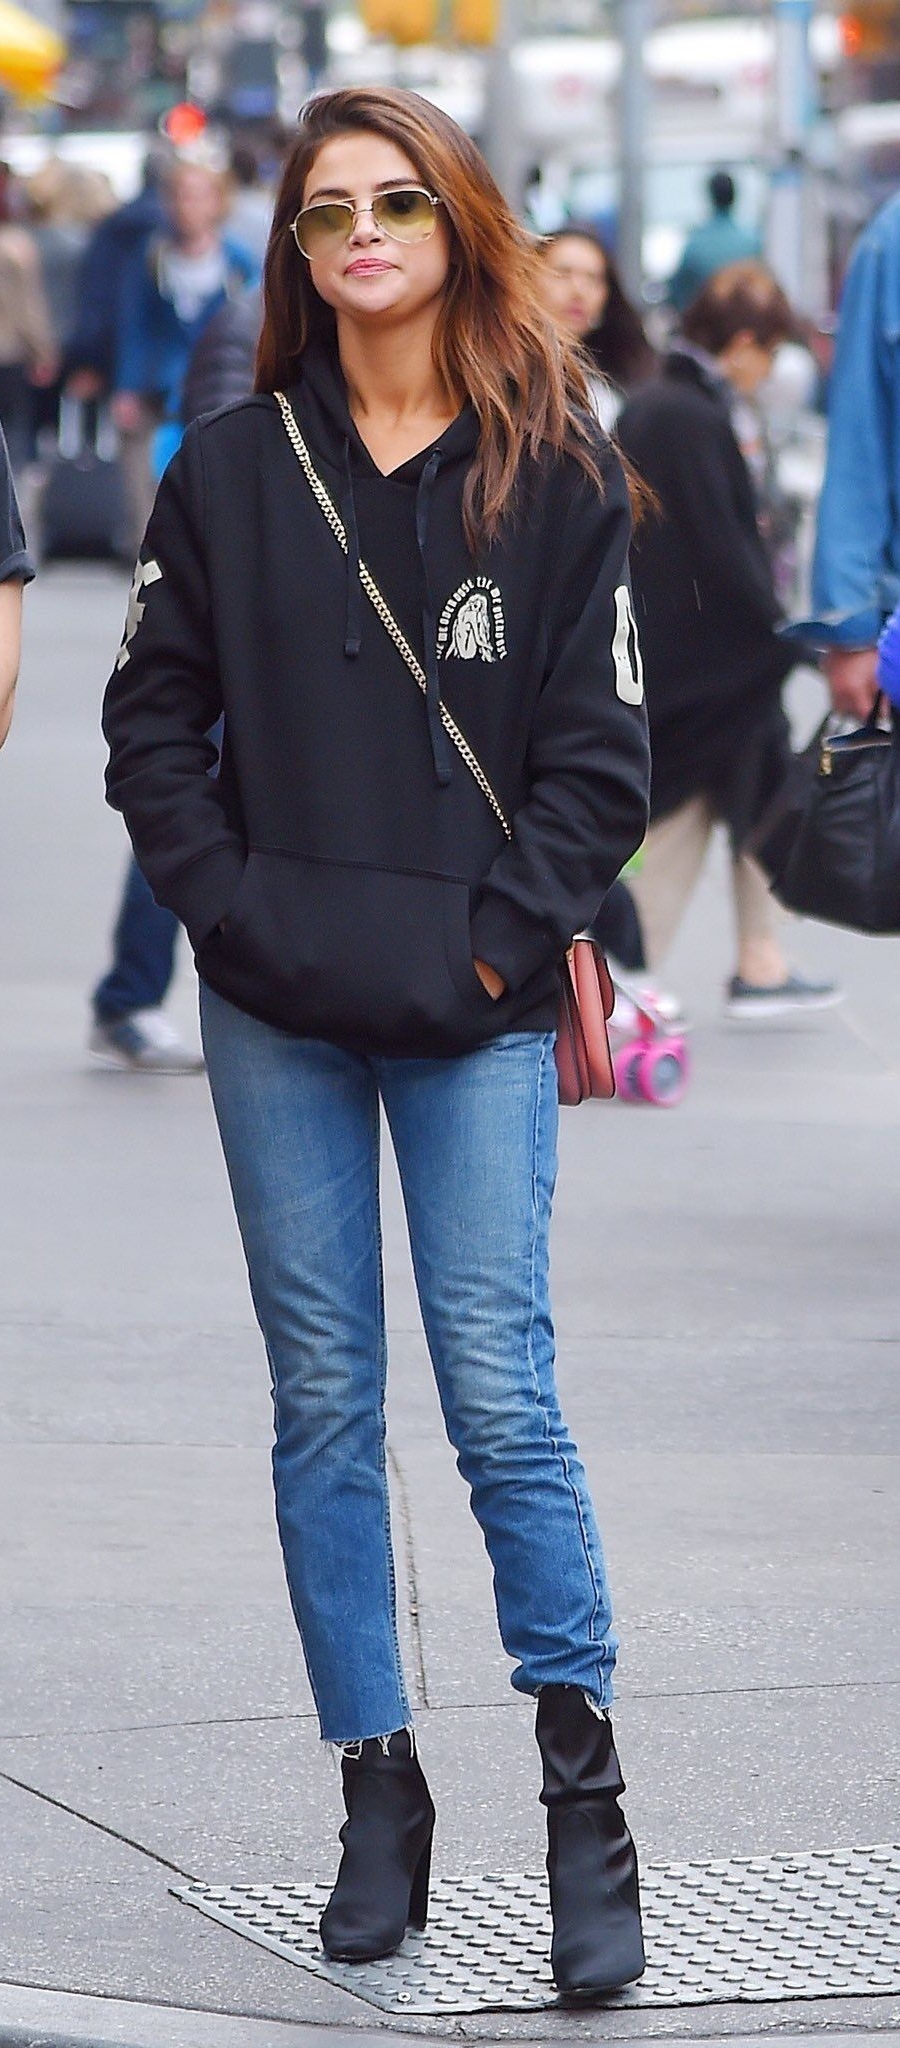 Selena mặc quần jeans xanh nhạt dáng cơ bản cùng áo hoodie đen bắt tông với boots - Ảnh: Internet